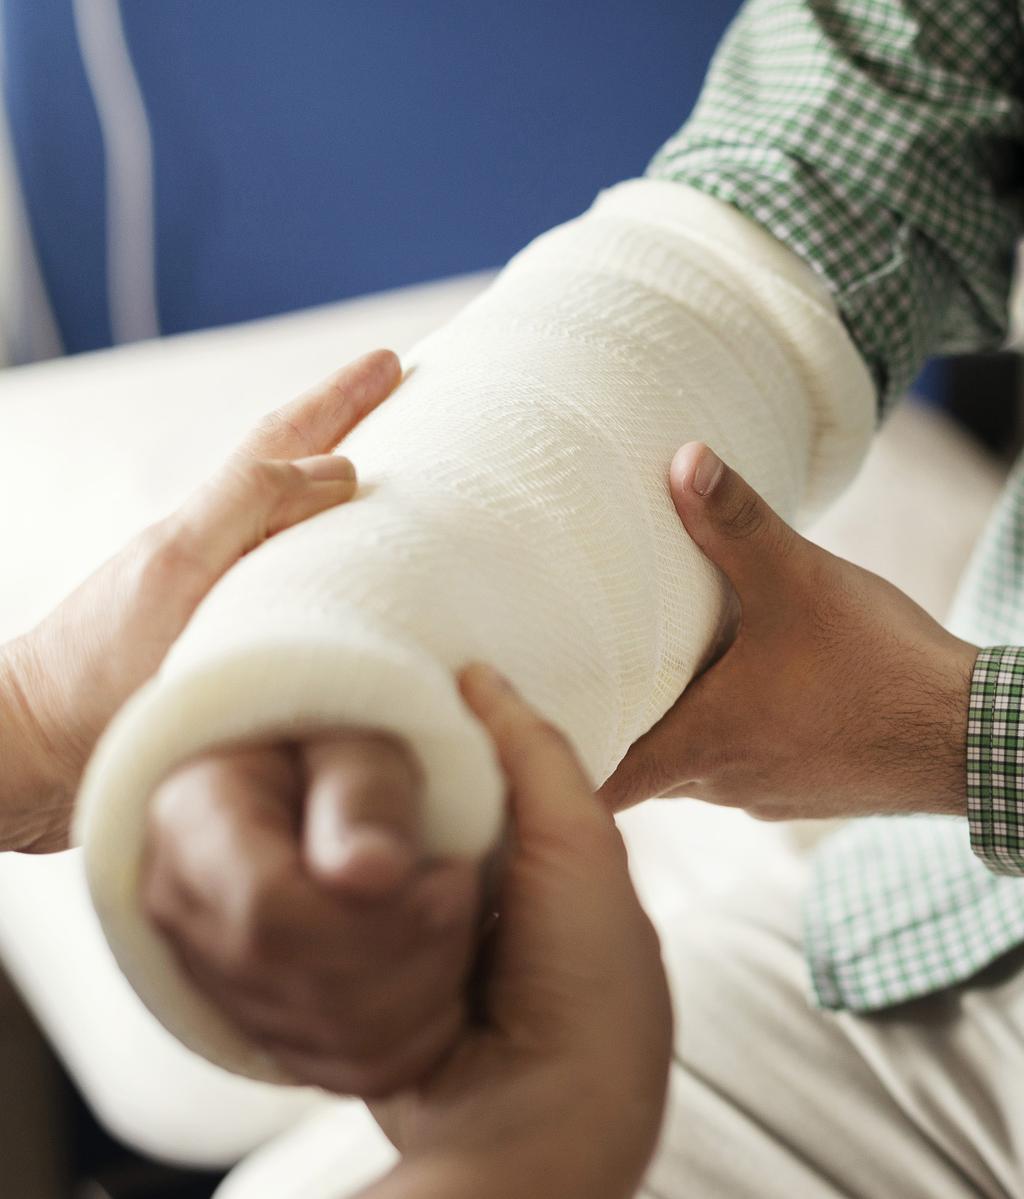 KONSEKVENSER AV FALLOLYCKOR Konsekvenser av fallolyckor En skadekonsulent på AFA Försäkring: En handledsfraktur måste nästan alltid gipsas, med allt vad det innebär av smärta, upprepade läkarbesök